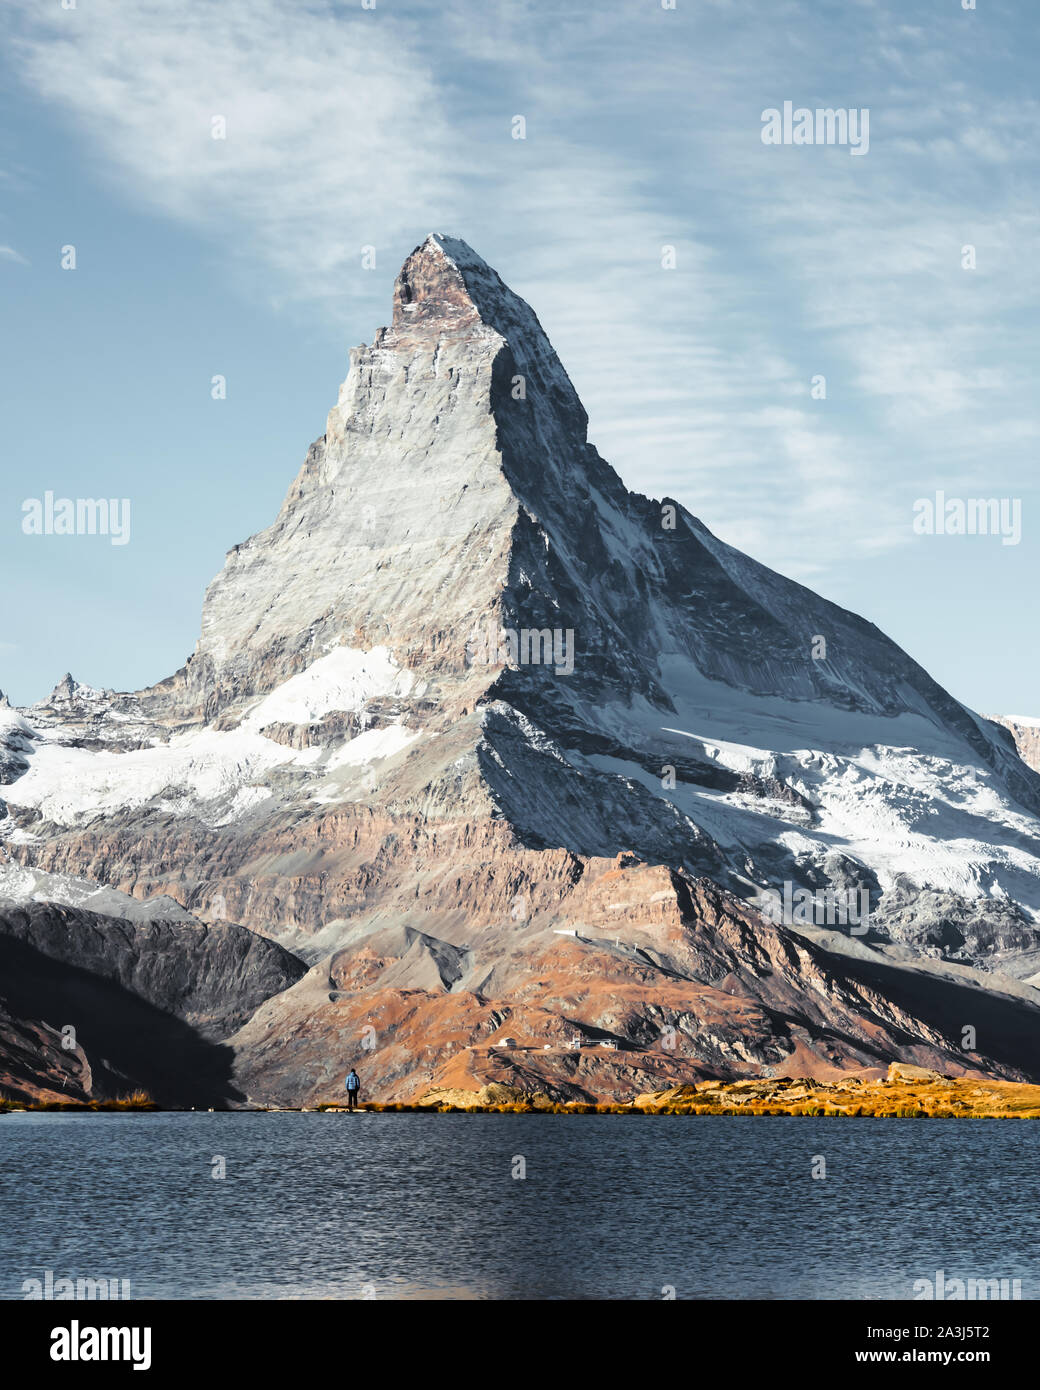 Malerische Aussicht auf das Matterhorn Matterhorn Peak und Stellisee See in der Schweizer Alpen. Tag Foto mit blauen Himmel. Zermatt Resort Lage, Schweiz. Landschaftsfotografie Stockfoto